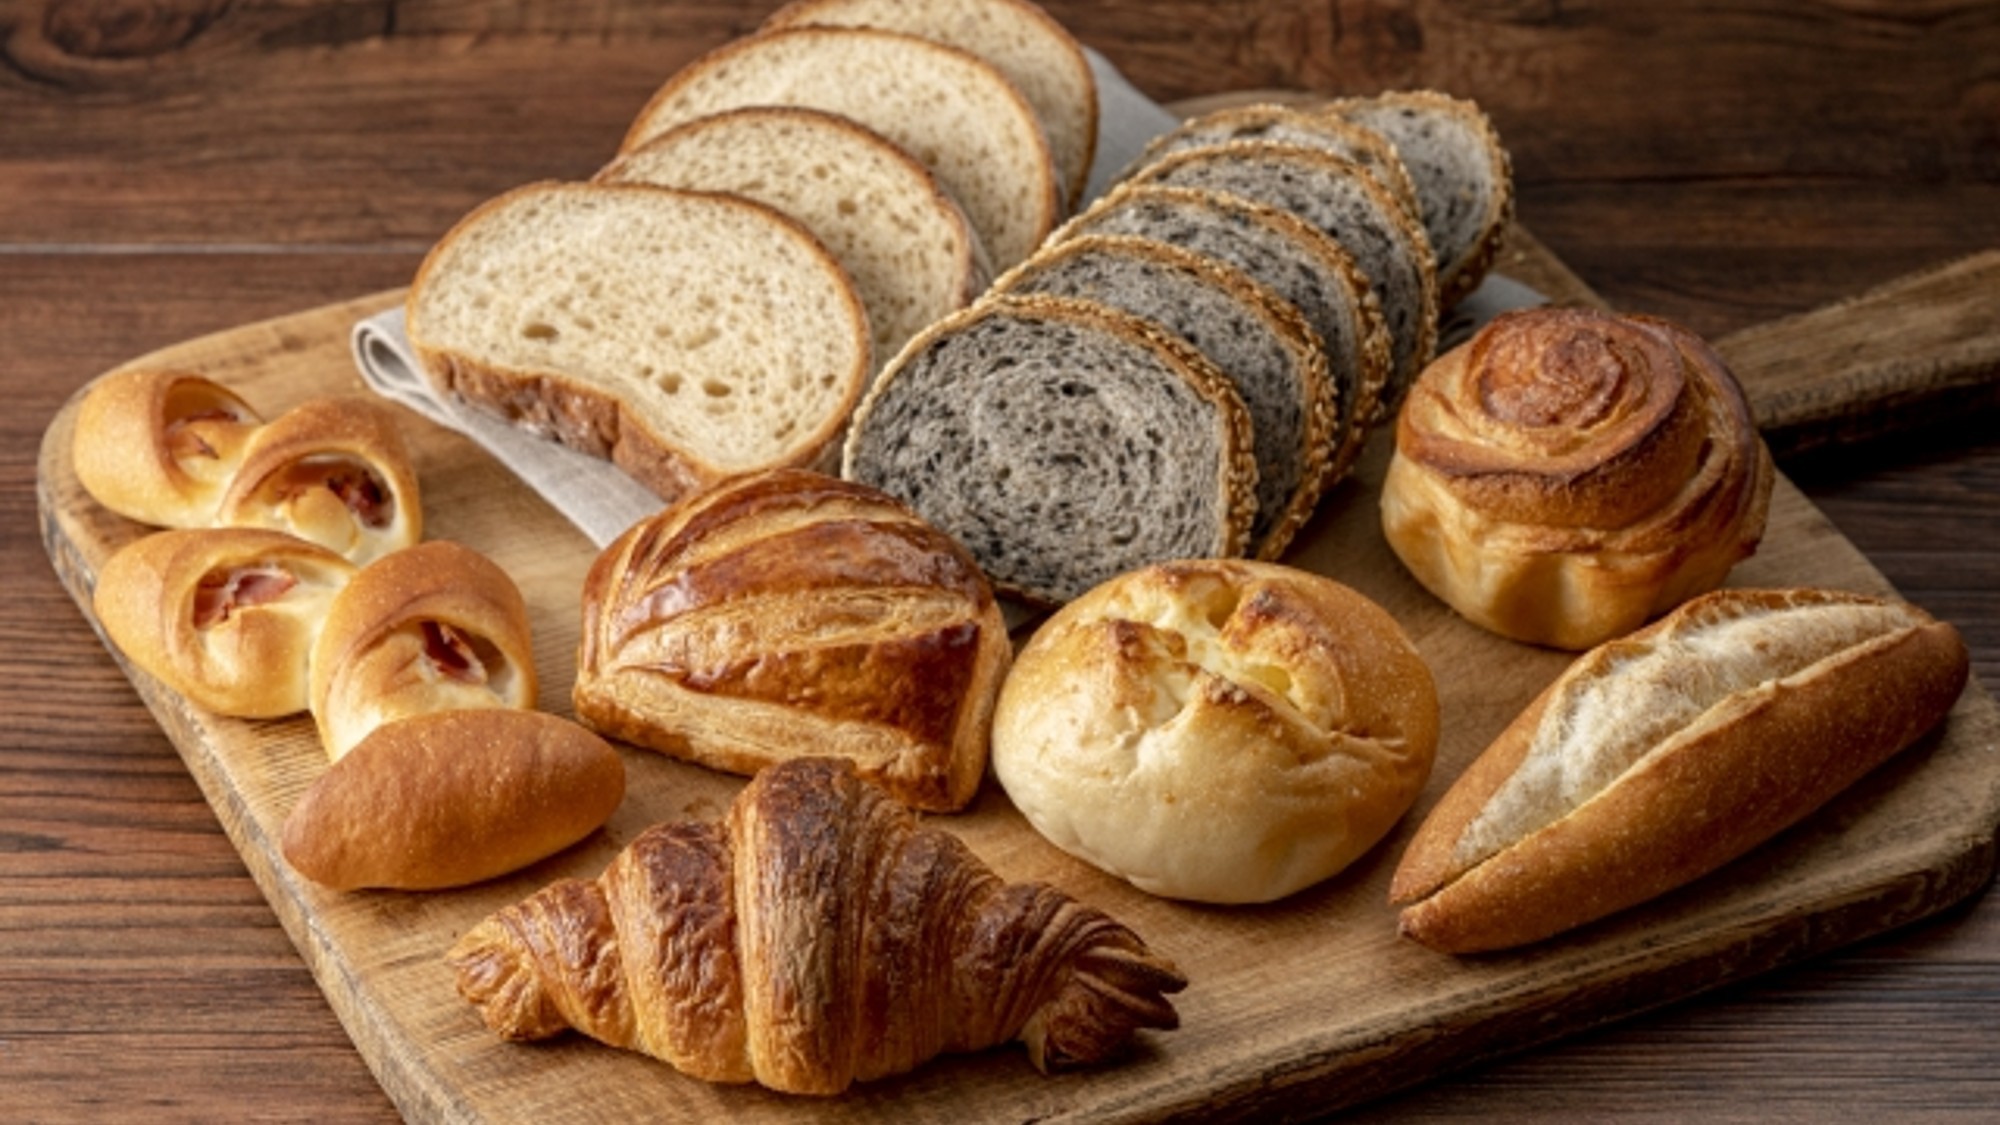 【ご朝食】パンを数種類ご用意いたします。※画像はイメージです